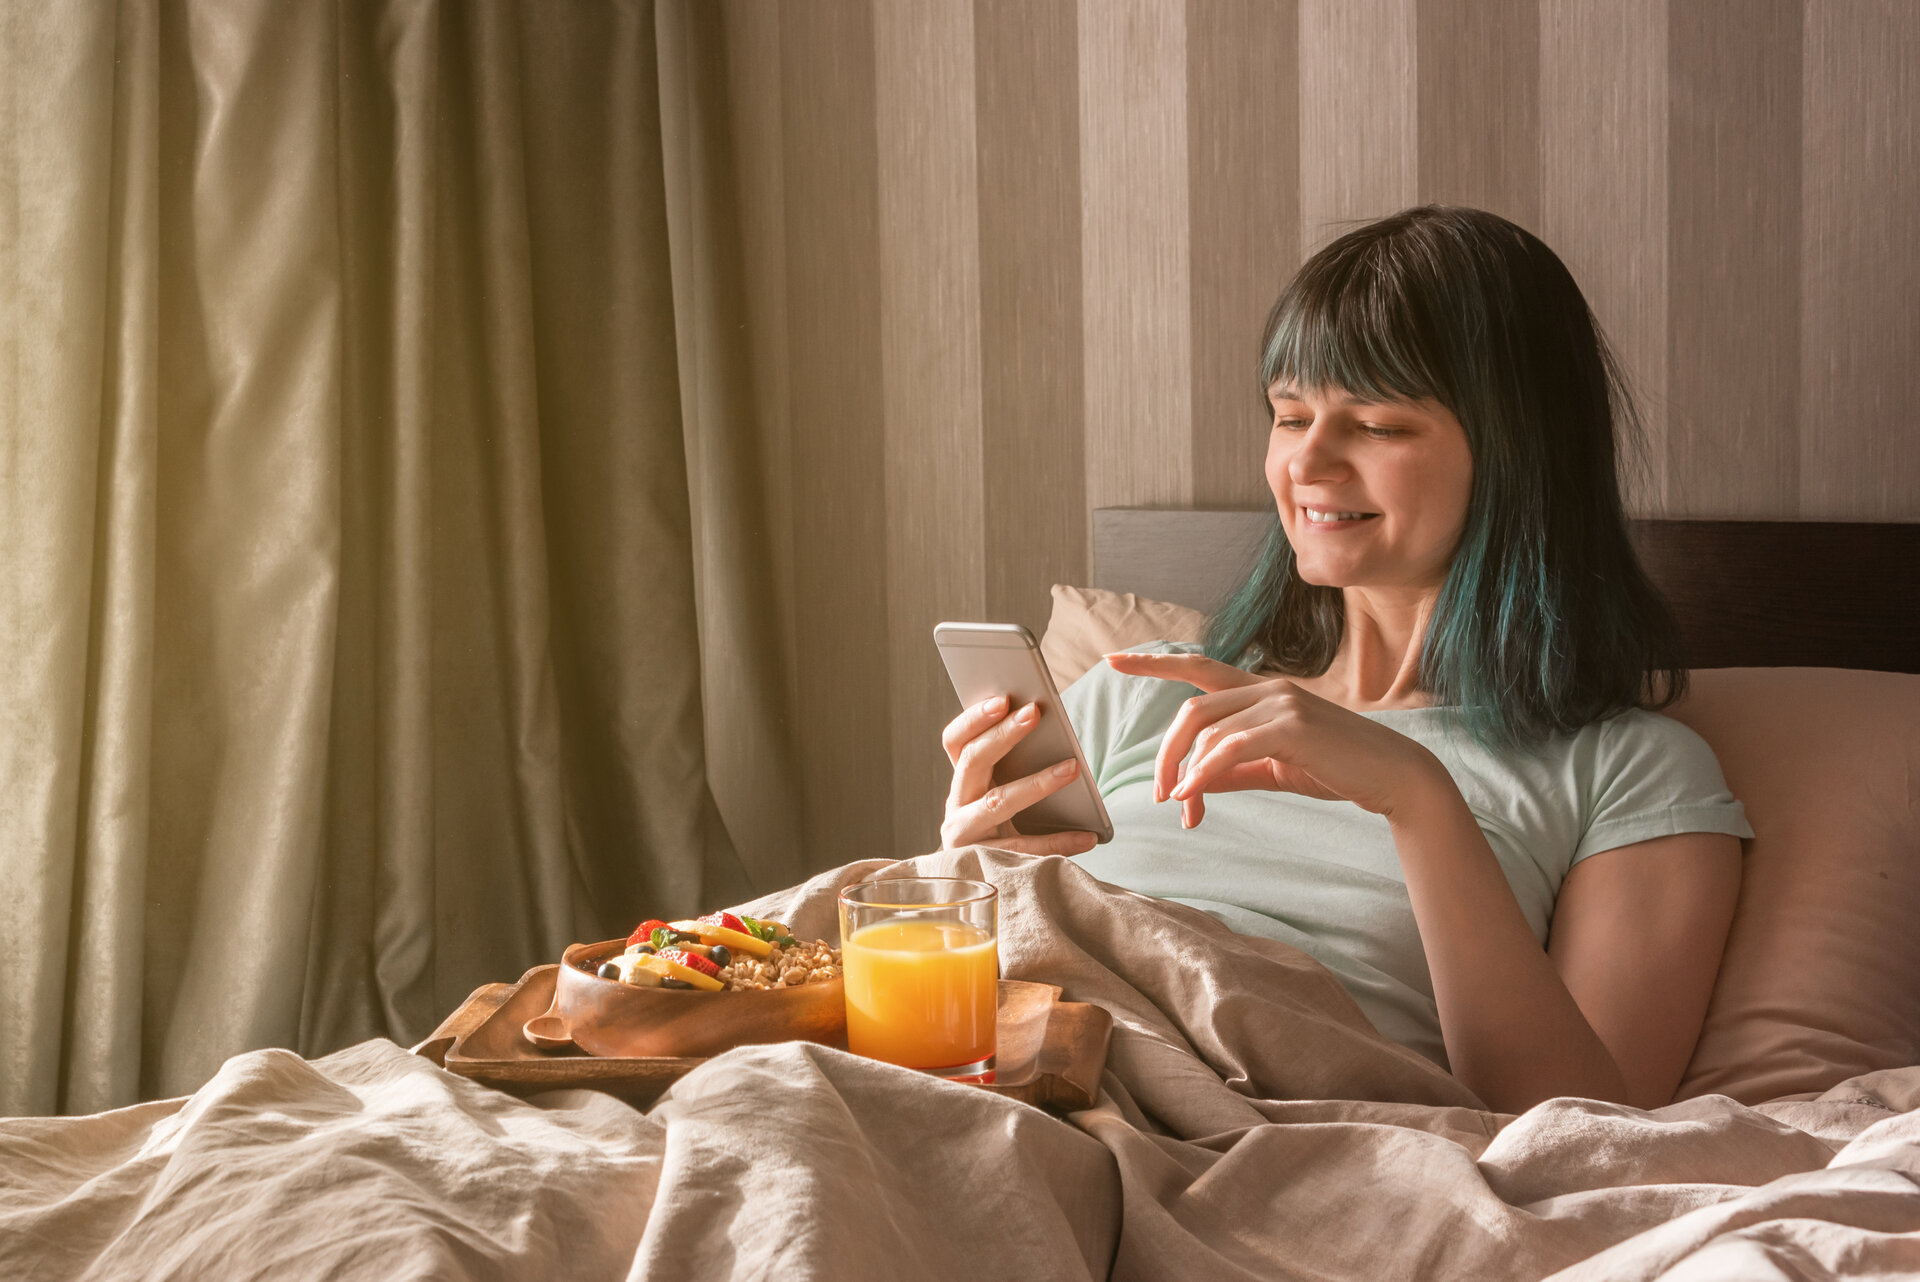 Gesundes Frühstück im Bett. Eine junge Frau im Schlafanzug hält ein Telefon, auf den Knien steht ein Tablett mit einer Schüssel Müsli, Obst und ein Glas mit Orangensaft.